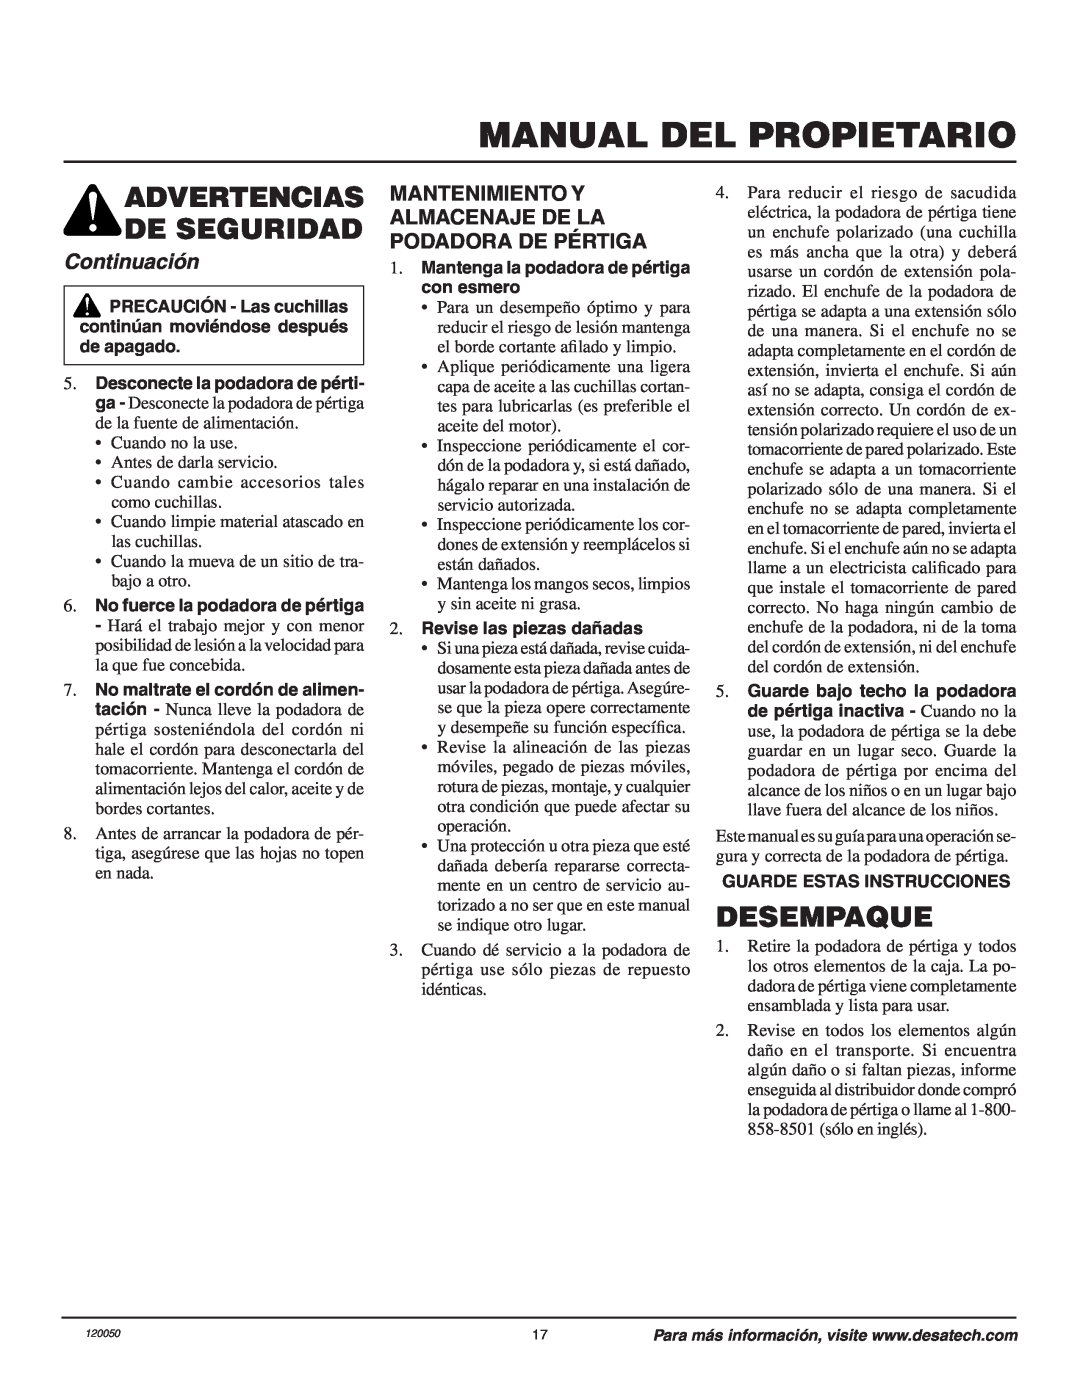 Remington AT3017BCA owner manual Manual Del Propietario, Desempaque, Continuación, Advertencias De Seguridad 